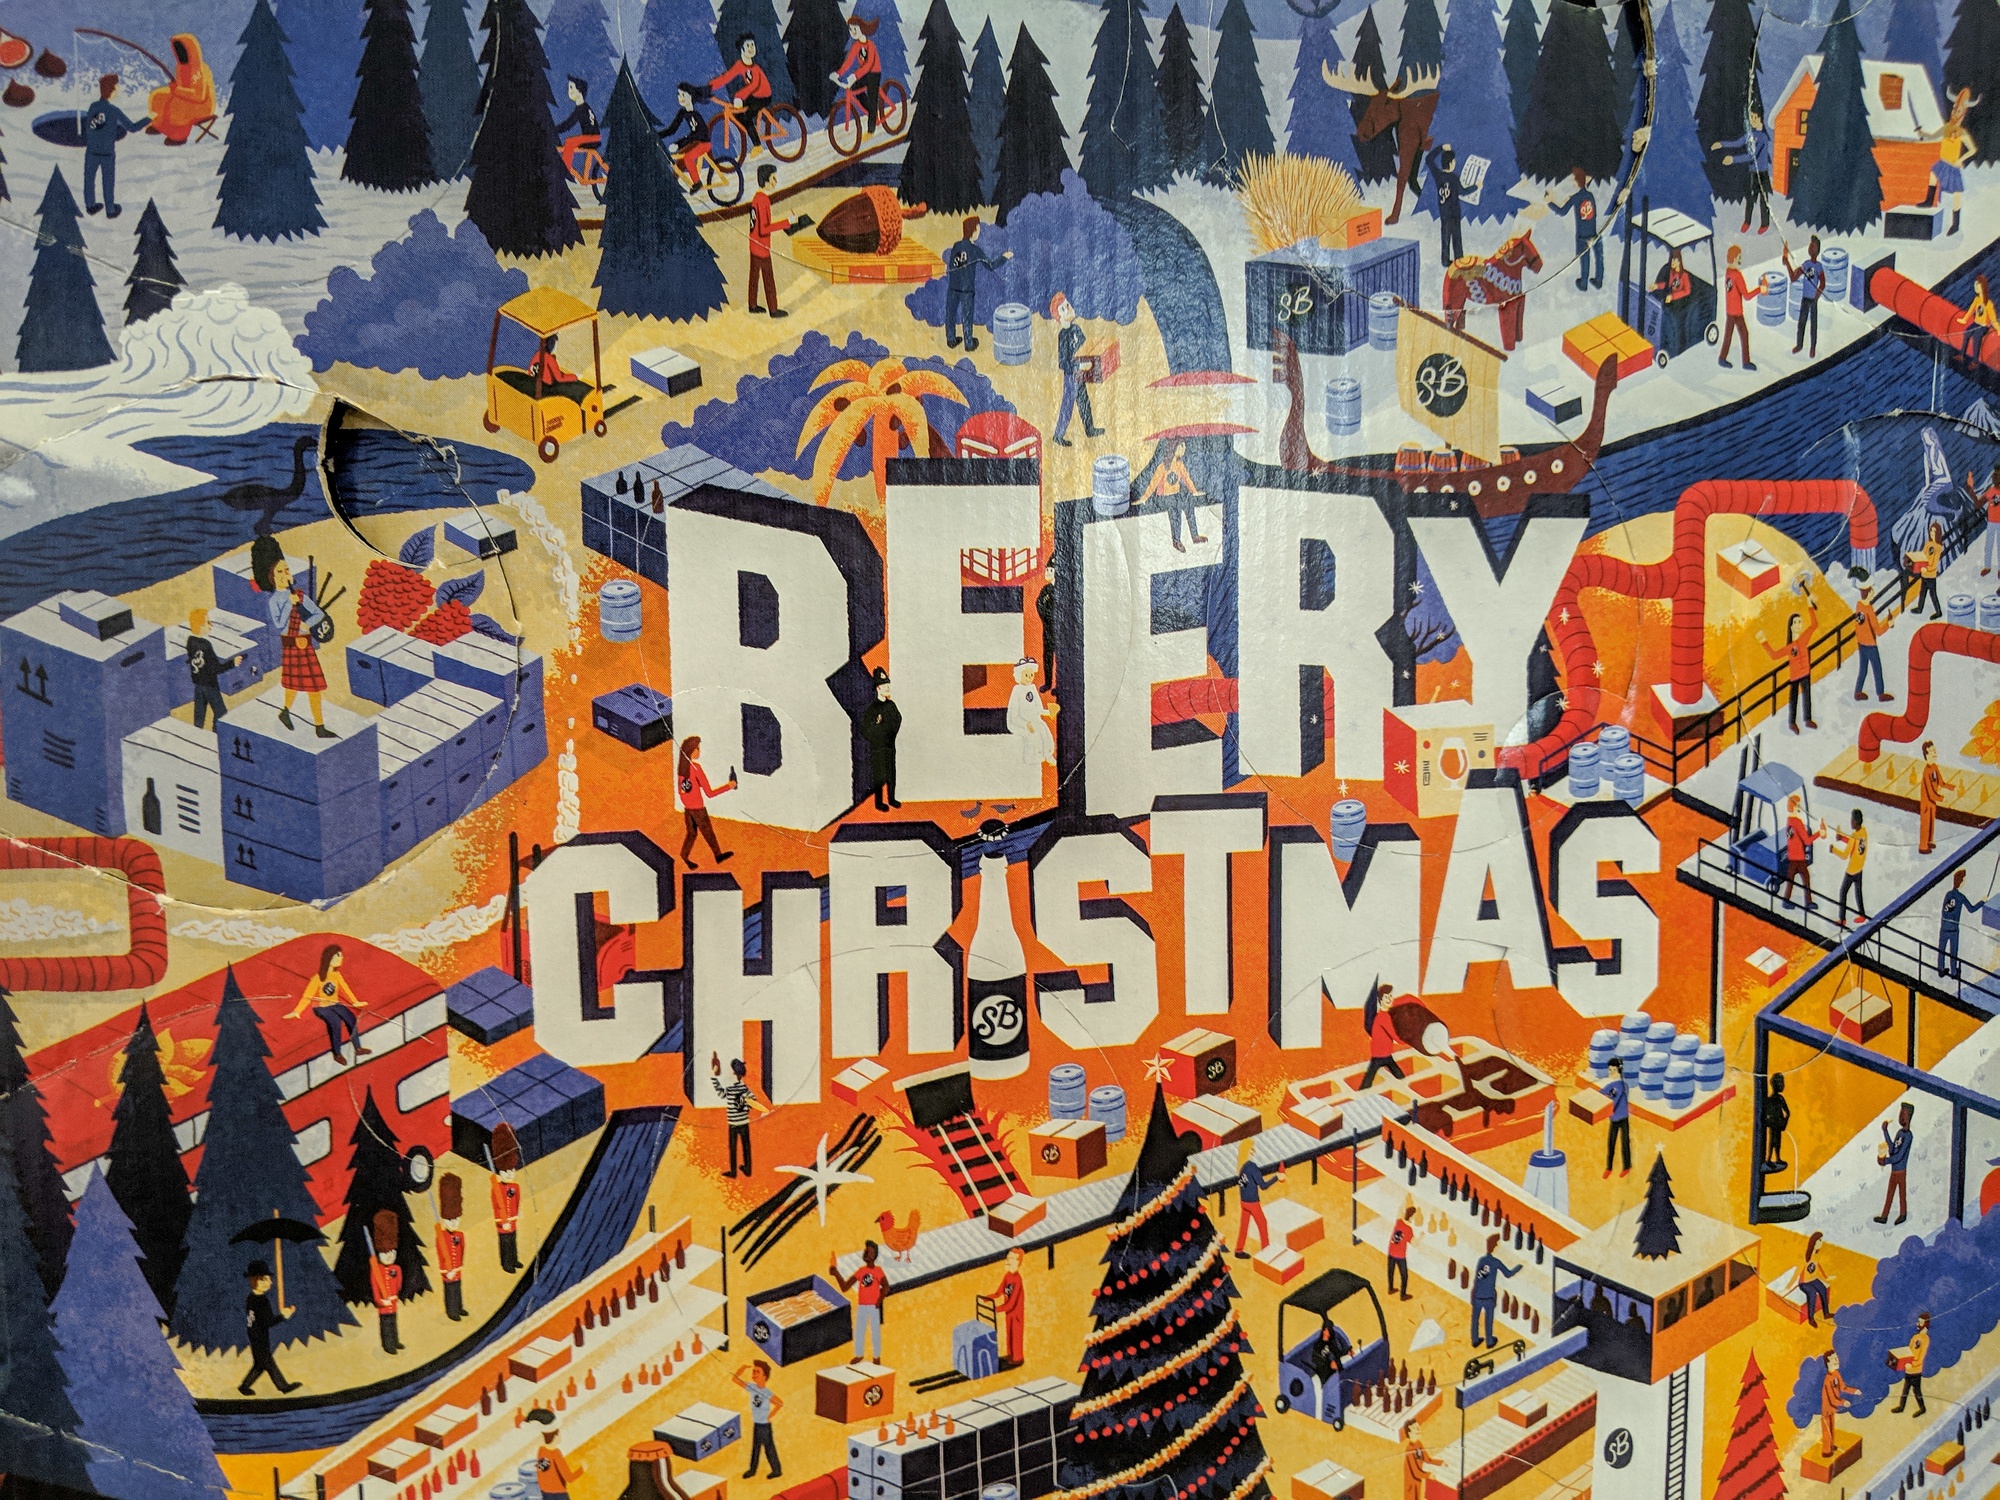 Beery Christmas Beery Christmas 2 Beery Christmas 2019 : Le calendrier de l’avent pour les amateurs de bière Beery Christmas